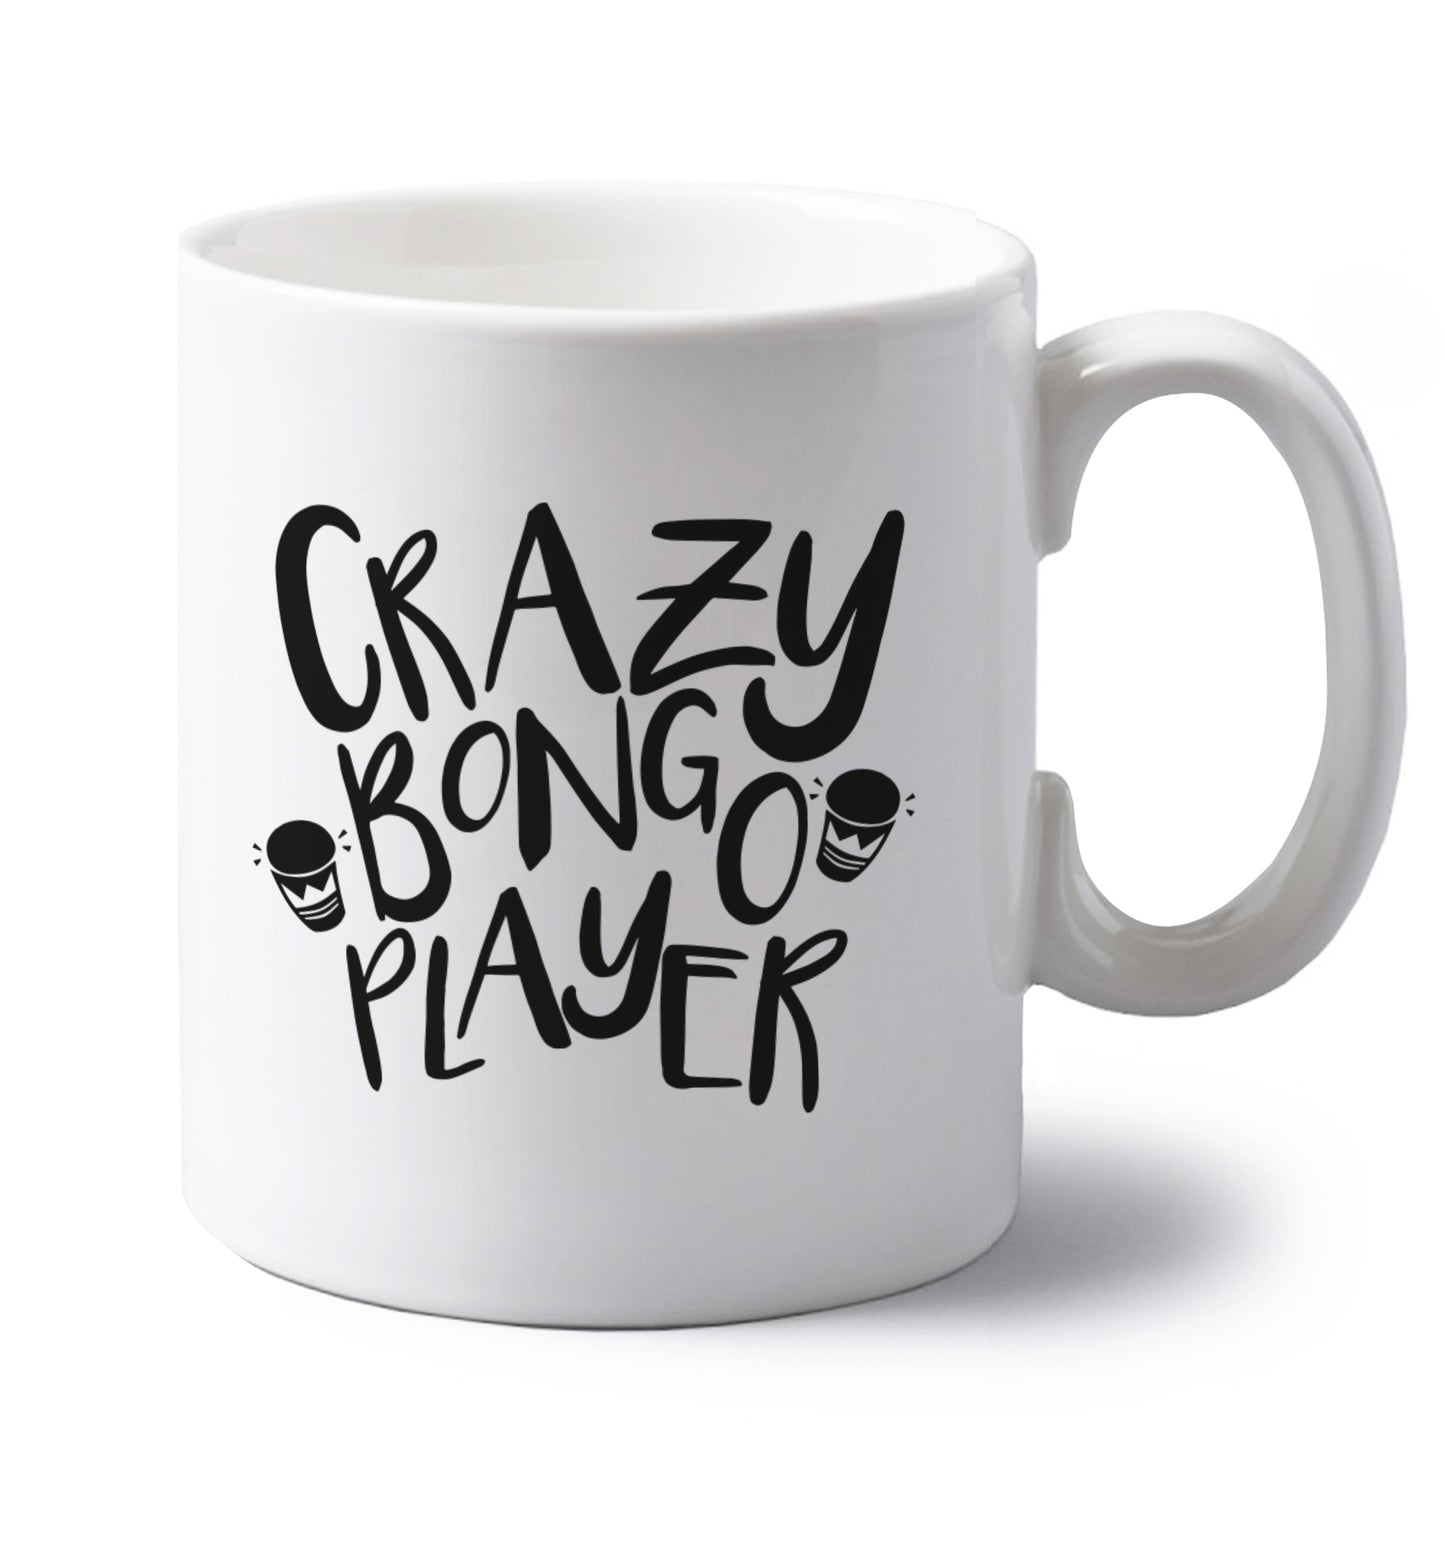 Crazy bongo player left handed white ceramic mug 